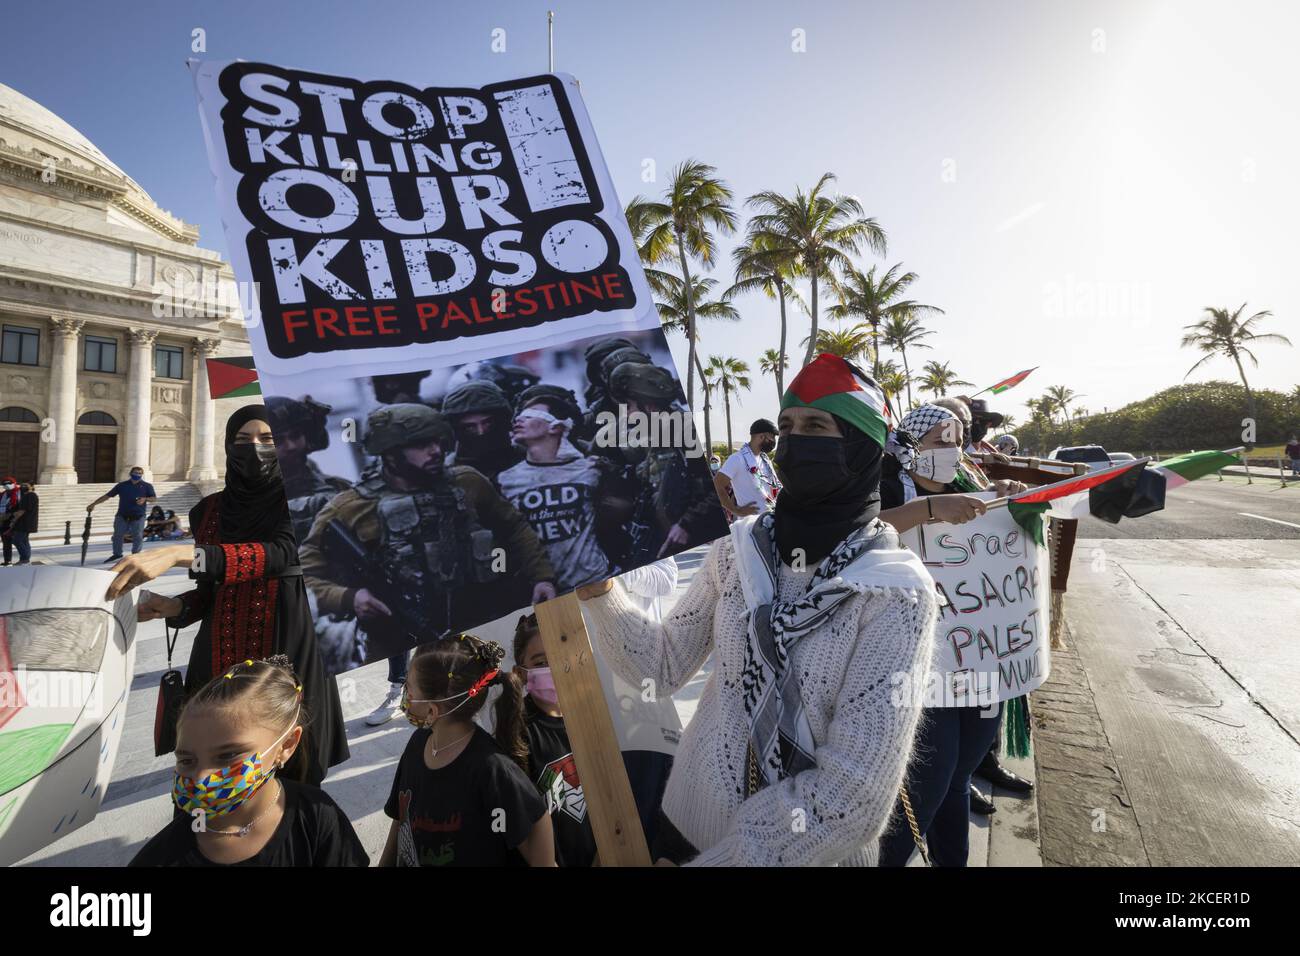 Am 16. Mai 2021 versammeln sich Menschen auf dem Kapitol in San Juan, Puerto Rico, um ihre Unterstützung für die Palästinenser zu demonstrieren. Gegen den jüngsten Angriff der Israelis werden in verschiedenen Ländern mehrere Proteste abgehalten. (Foto von Alejandro Granadillo/NurPhoto) Stockfoto